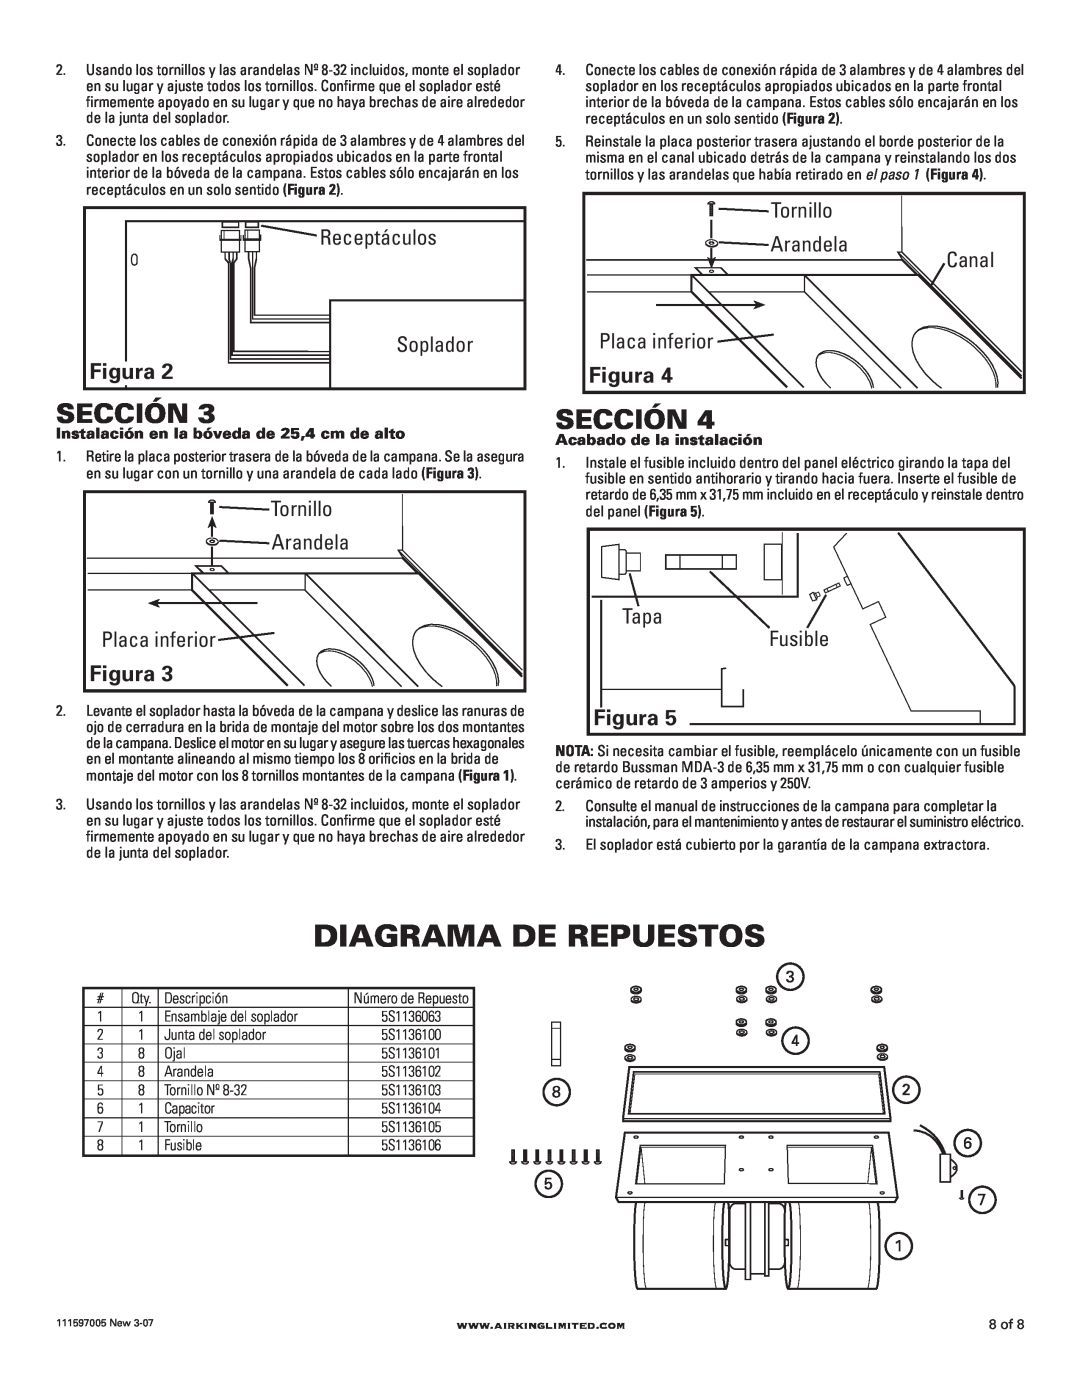 Air King B600 installation instructions Diagrama De Repuestos, Sección, Figura 